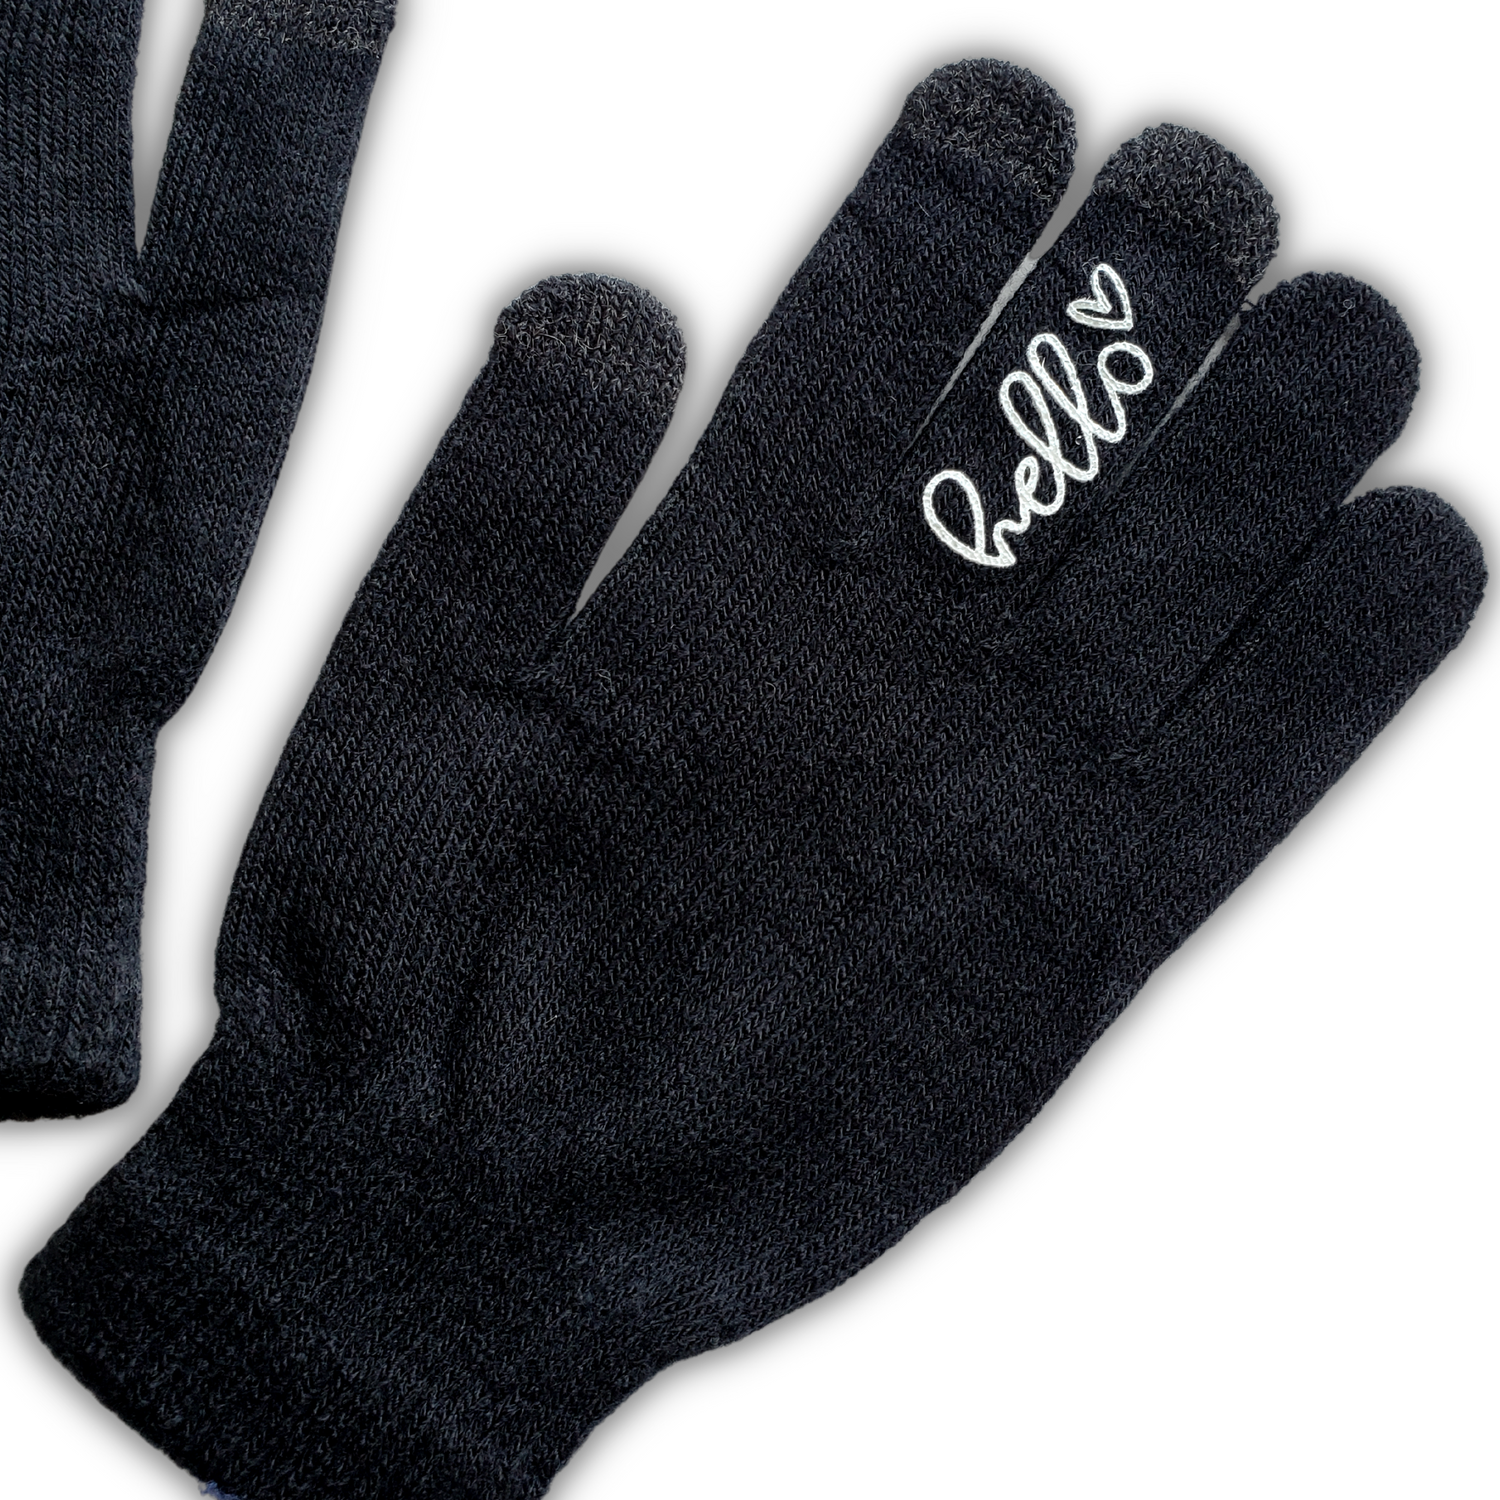 Socks & Gloves